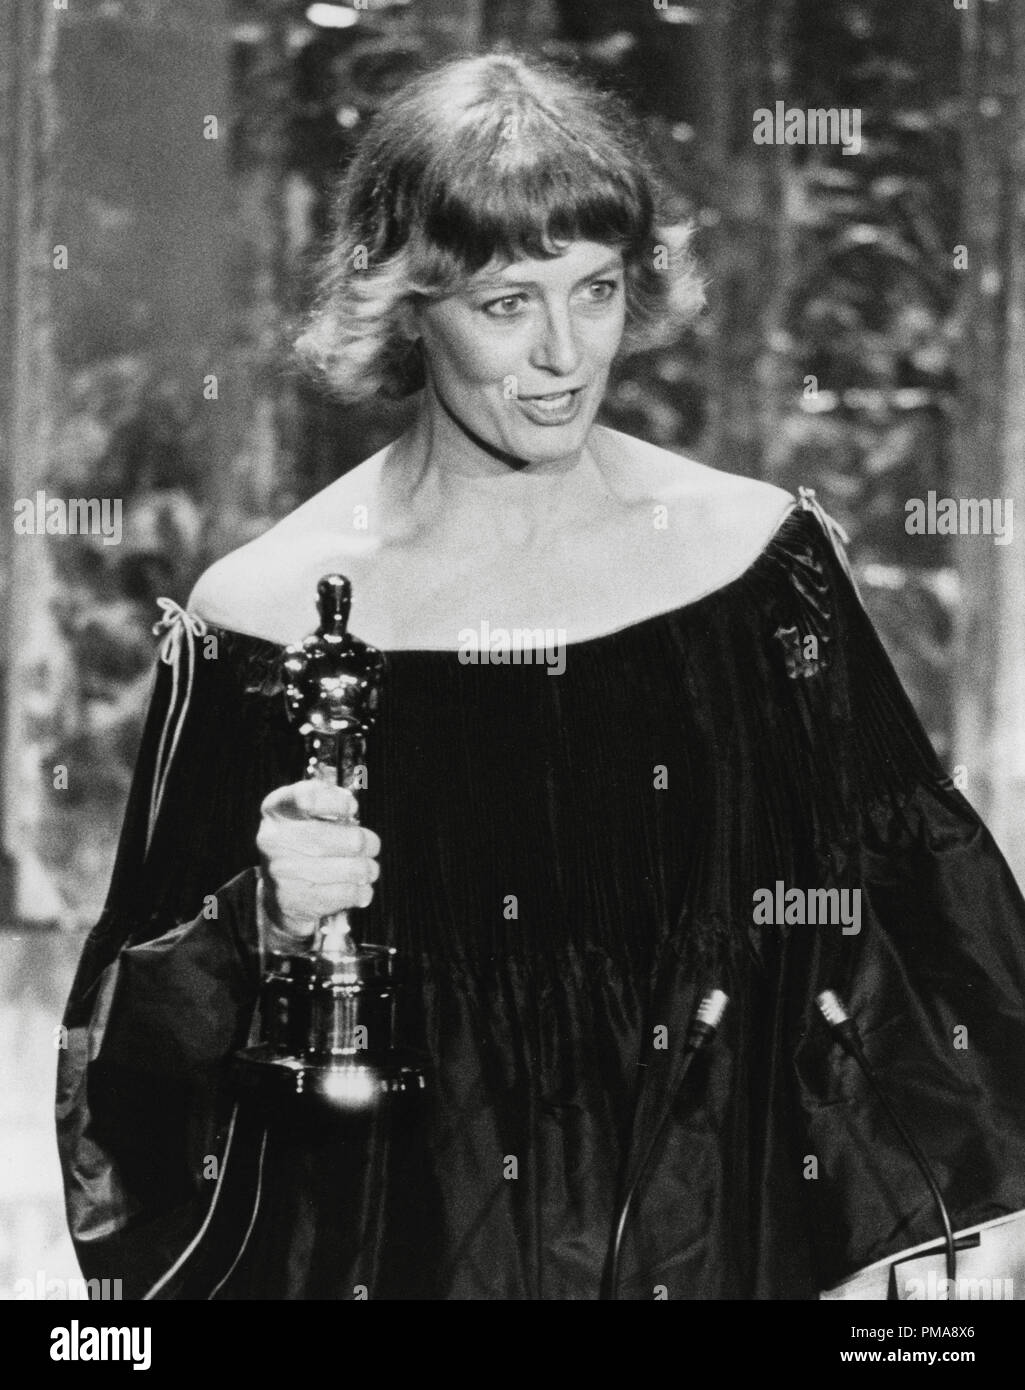 Vanessa Redgrave in occasione del cinquantesimo annuale di Academy Awards, 1978 Riferimento File # 31955 679THA Foto Stock